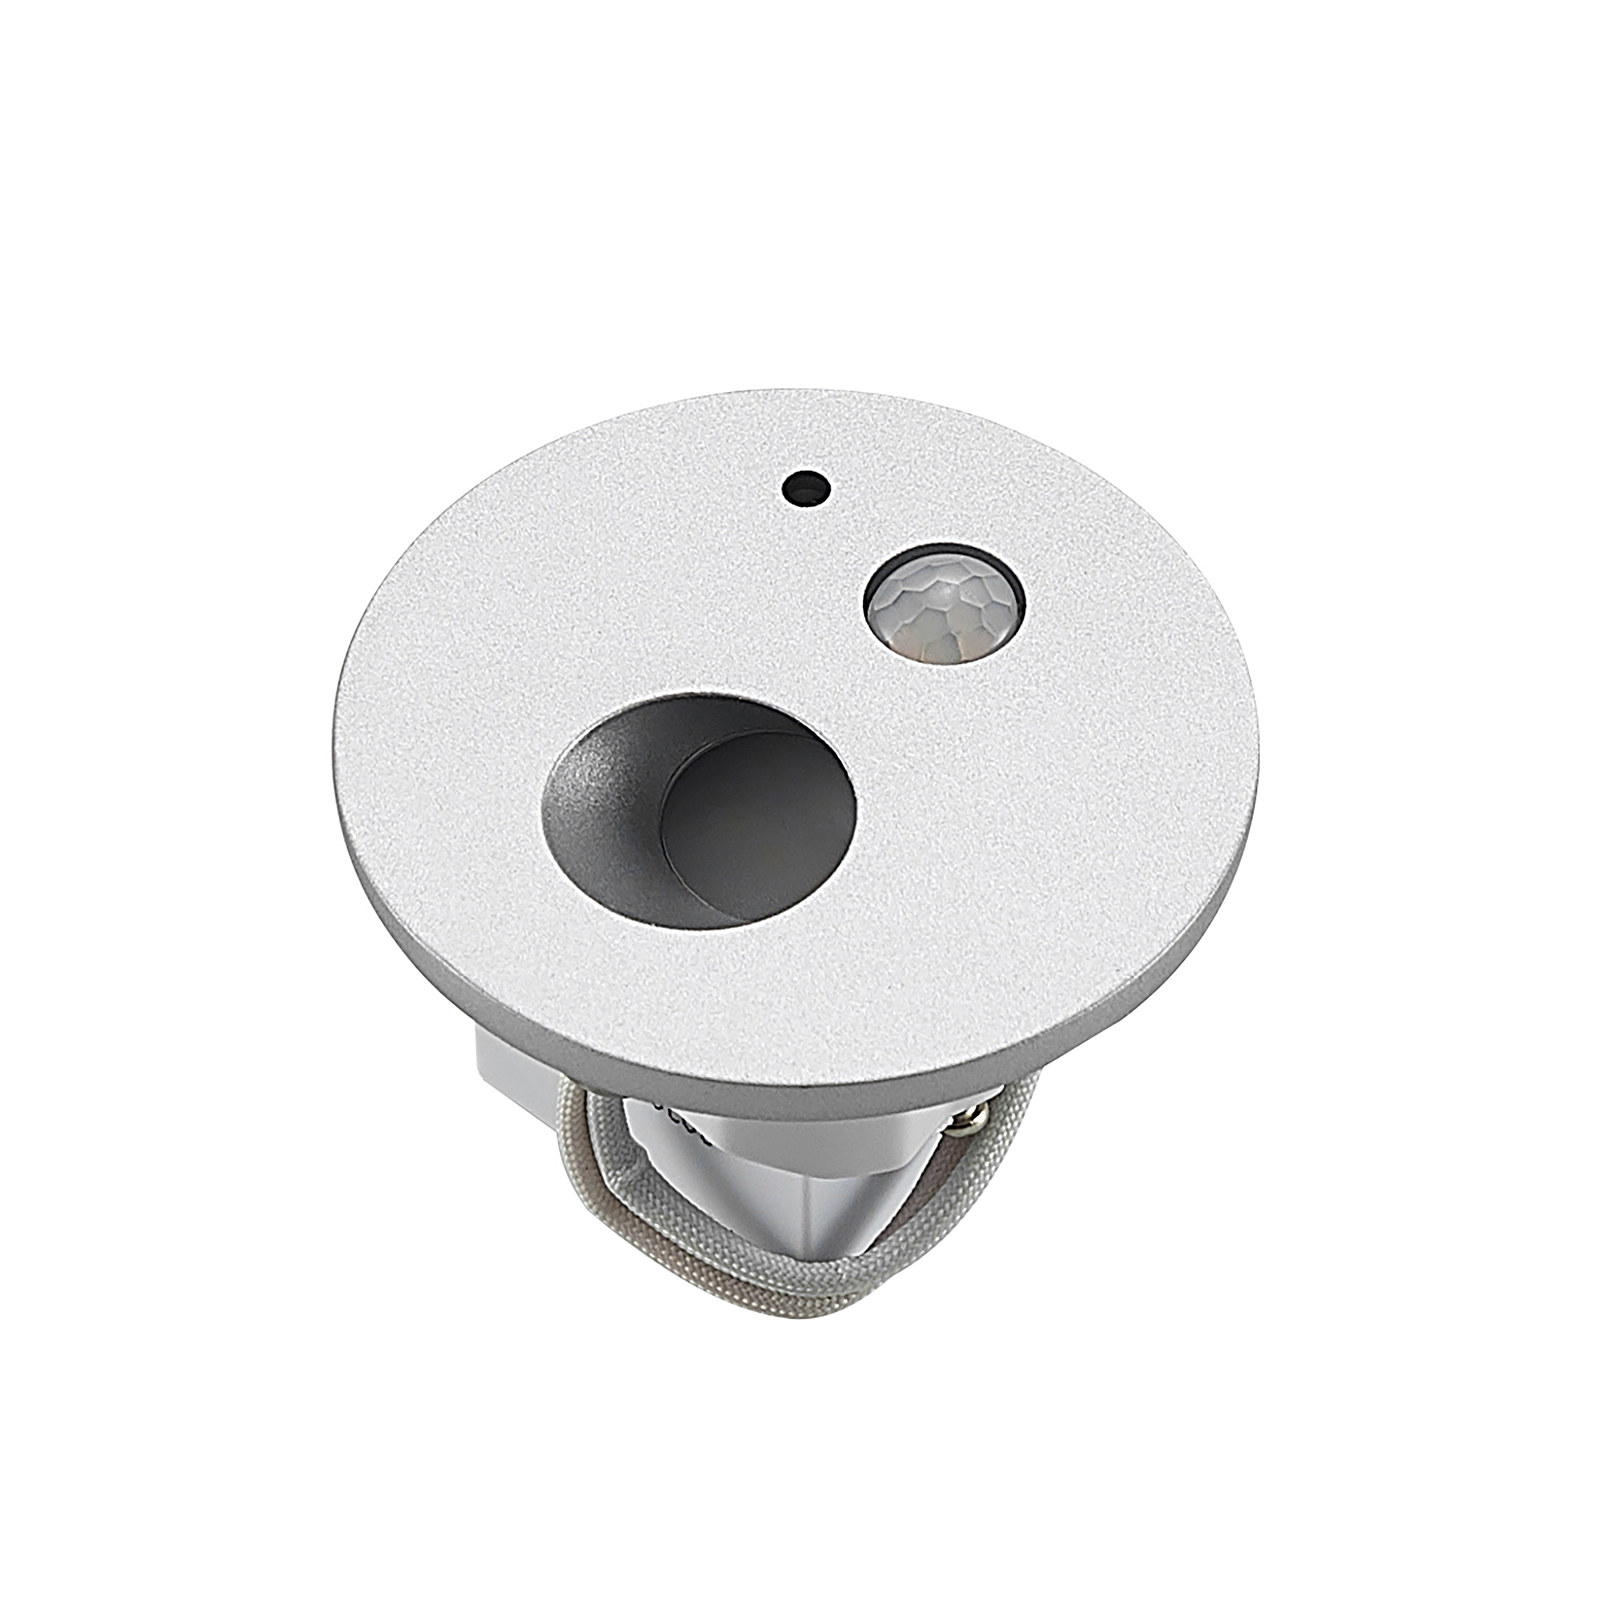 Arcchio Neru LED-Einbaulampe, Sensor, rund, silber